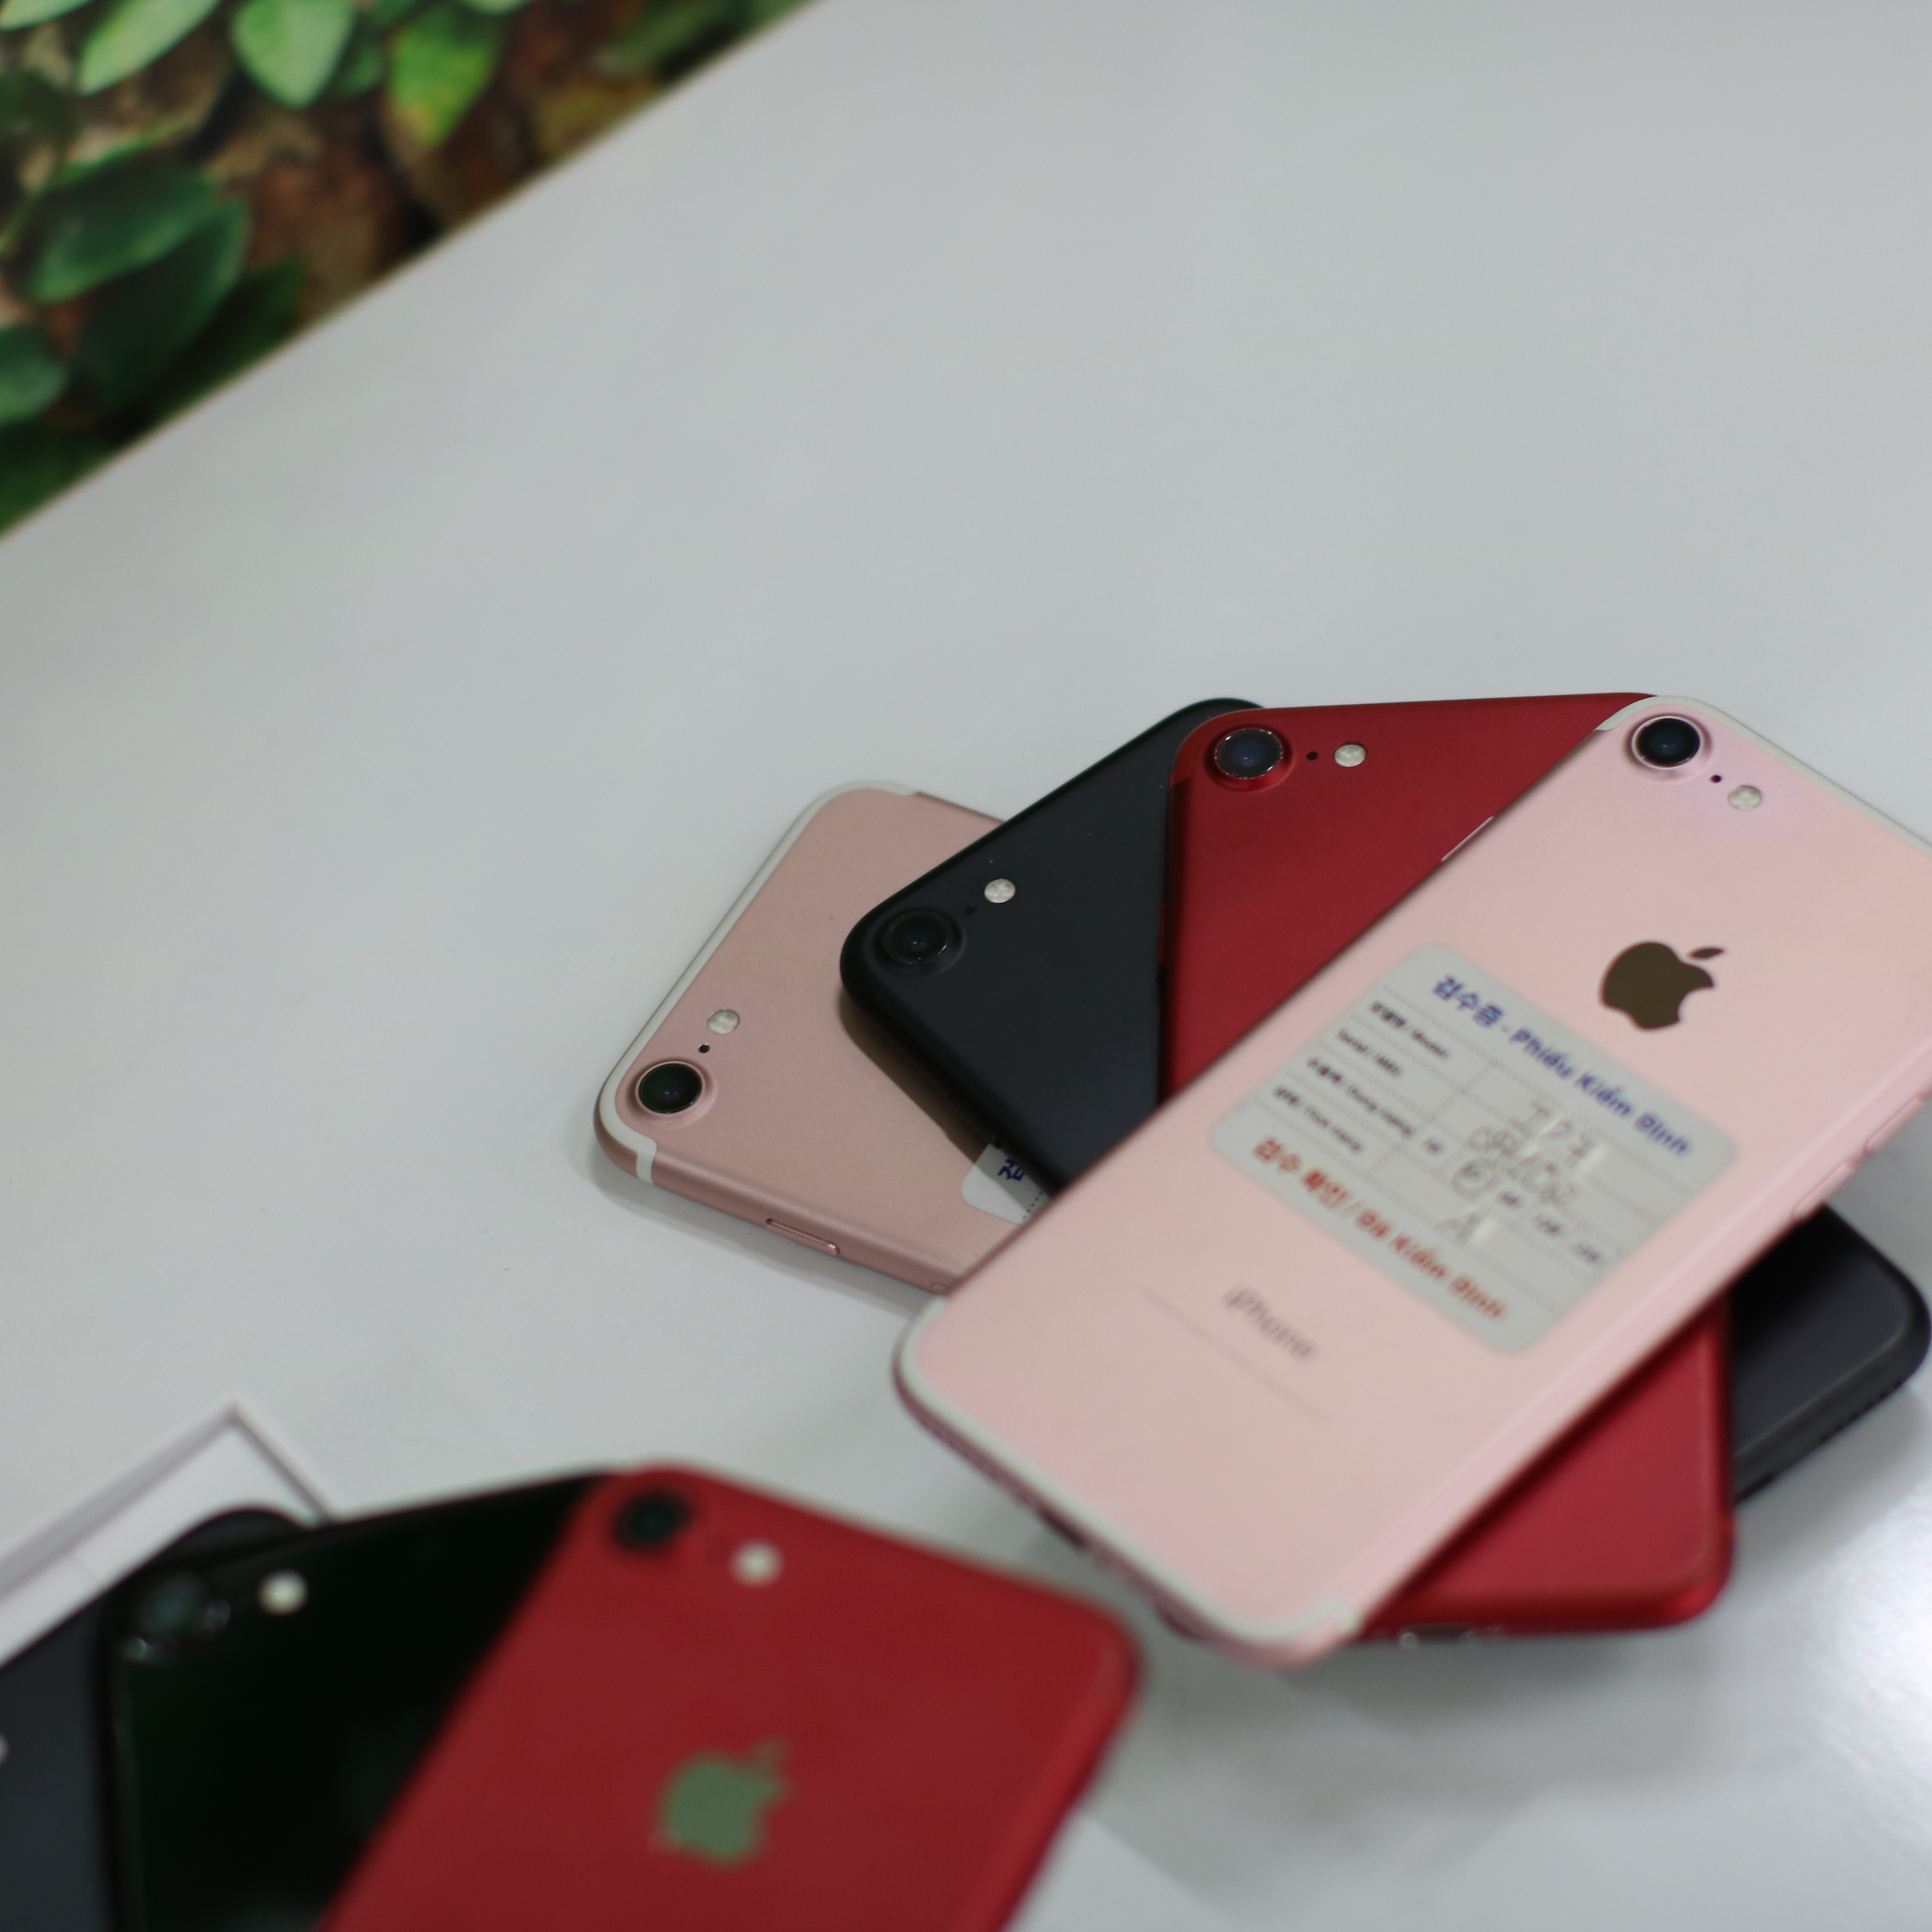 iPhone 7 cũ 32GB tại Hải Phòng giá rẻ